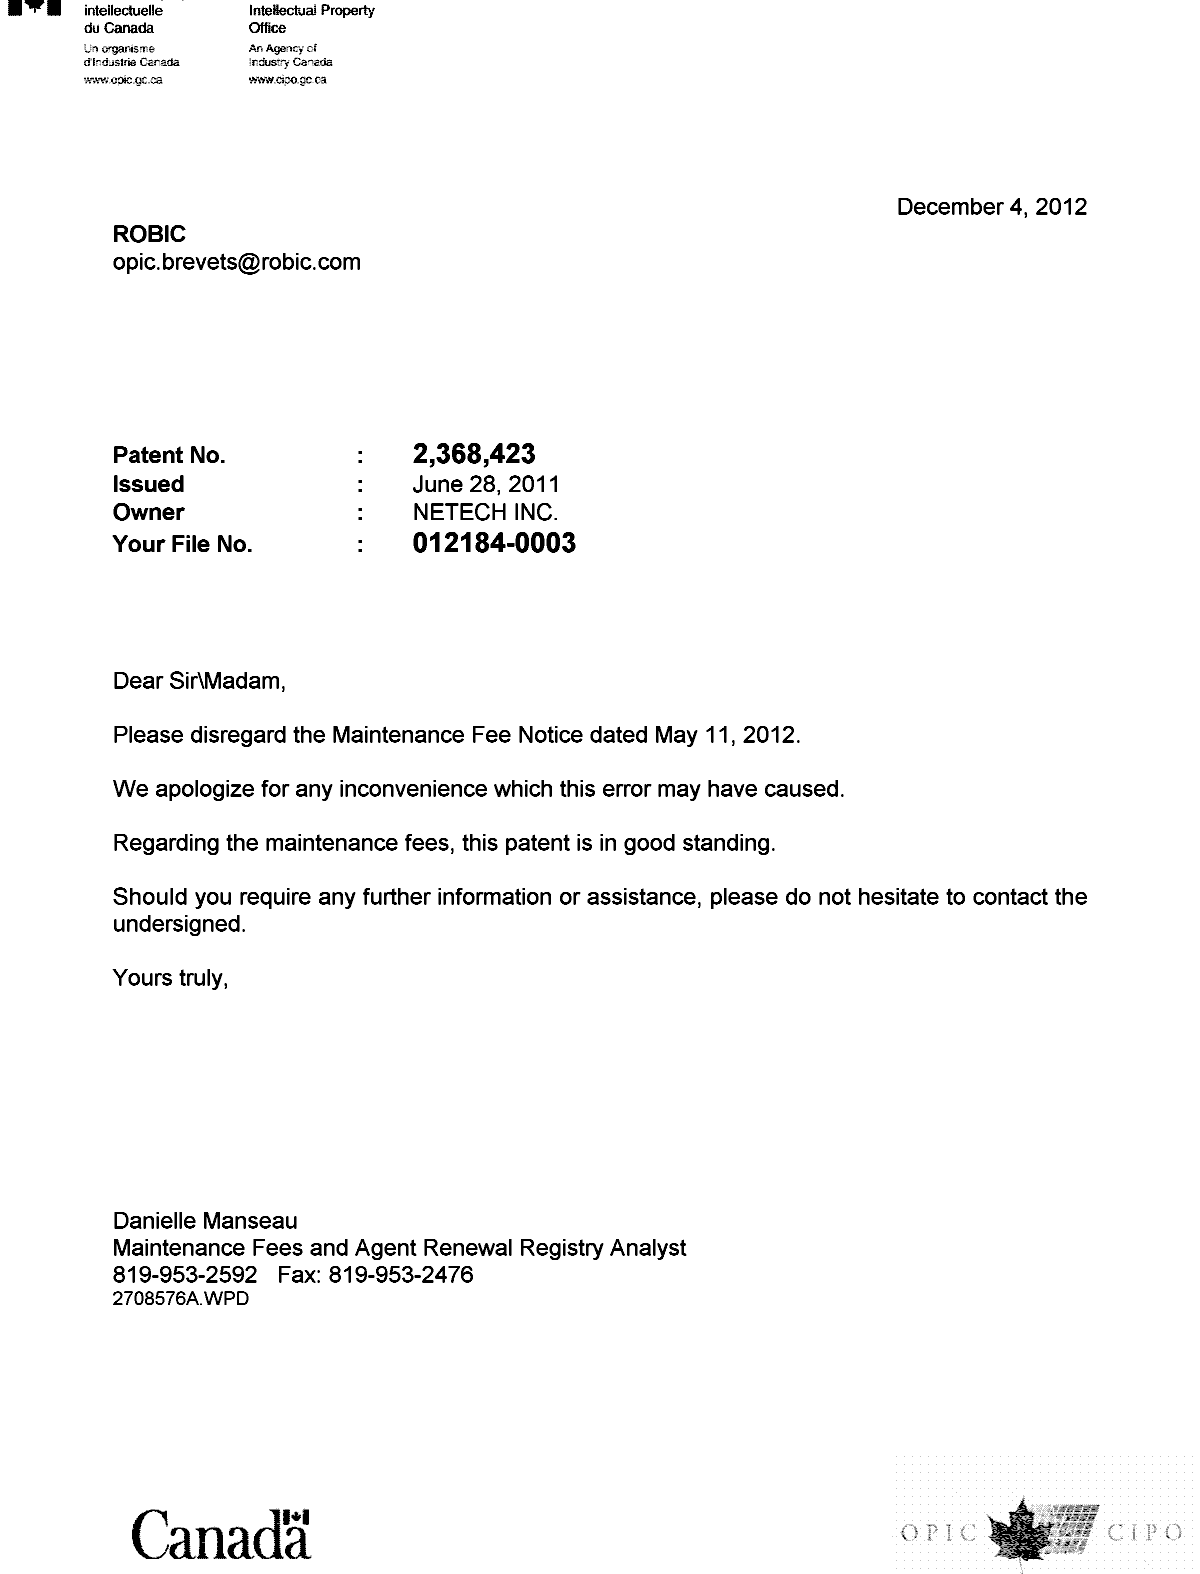 Document de brevet canadien 2368423. Correspondance 20121204. Image 1 de 1